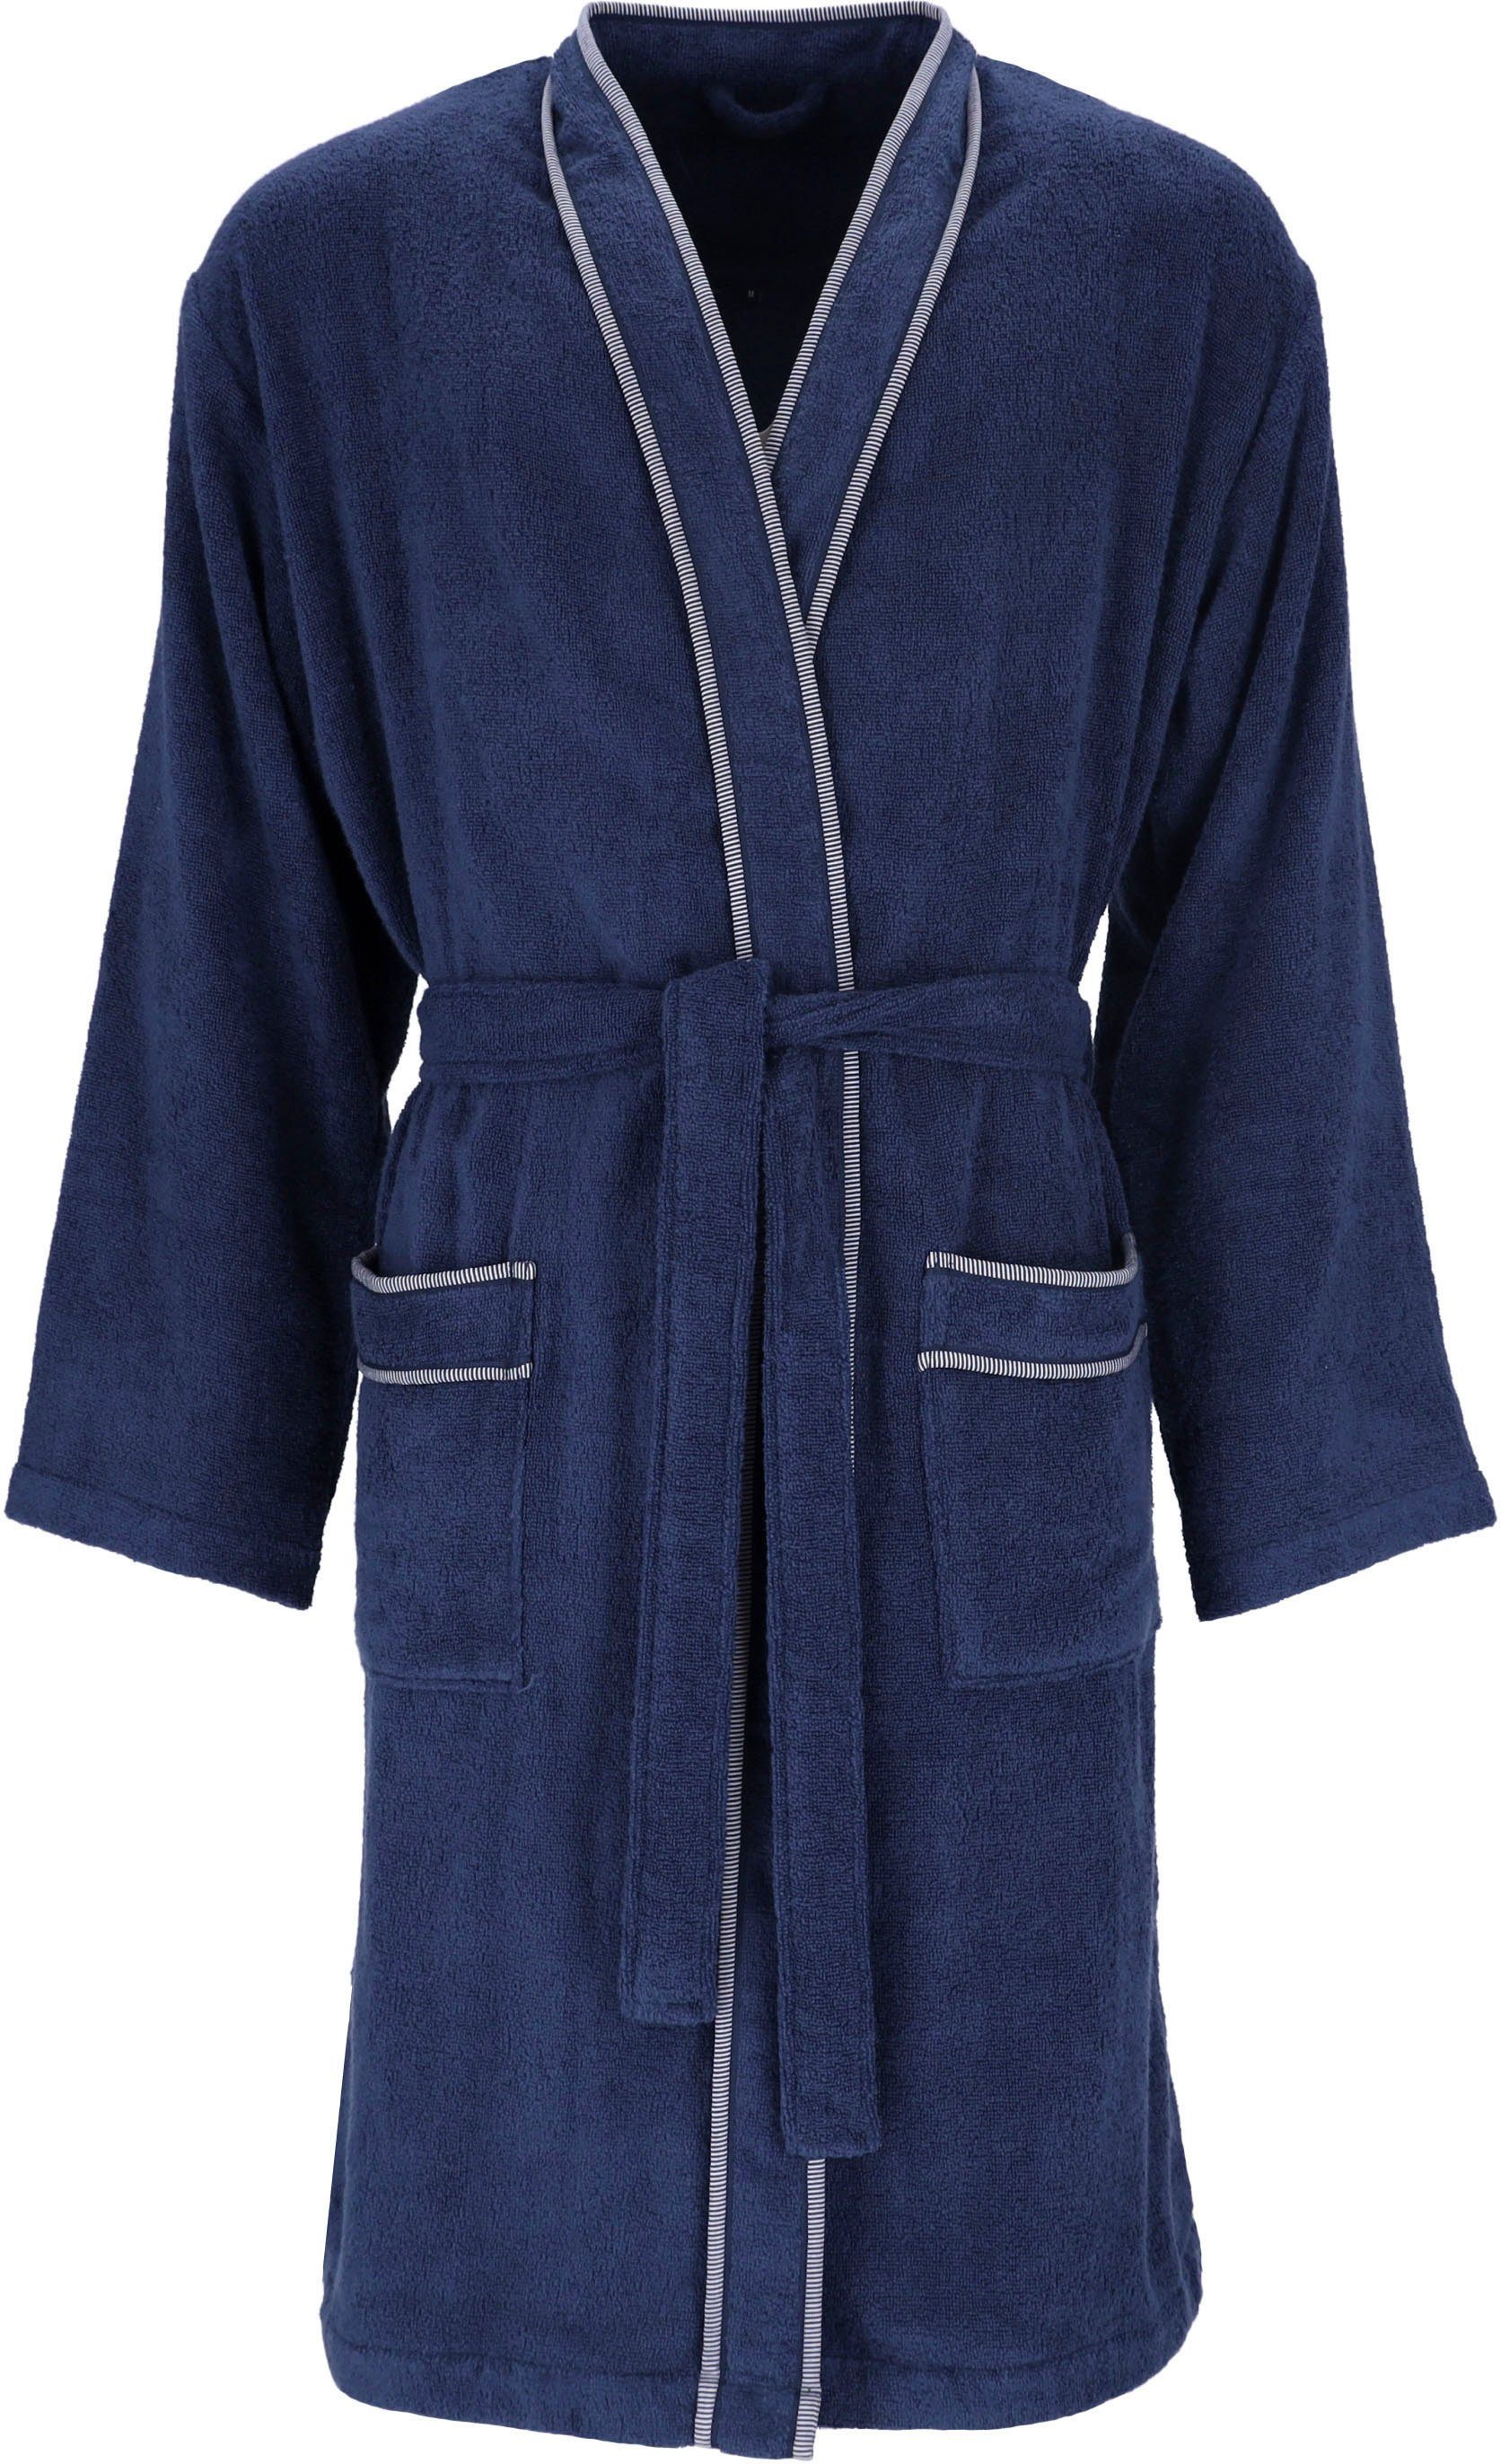 Vossen Herrenbademantel Jack, Kimono-Kragen, Gürtel Langform, blau marine Baumwolle